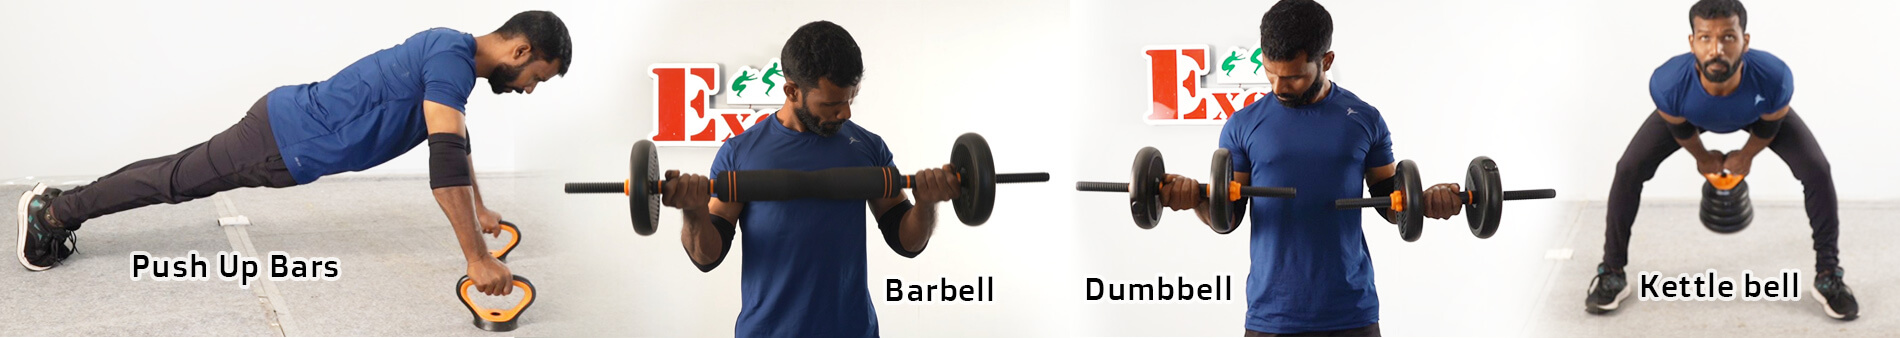 excel-dumbbell-barbell-kettlebell-push-up-bars